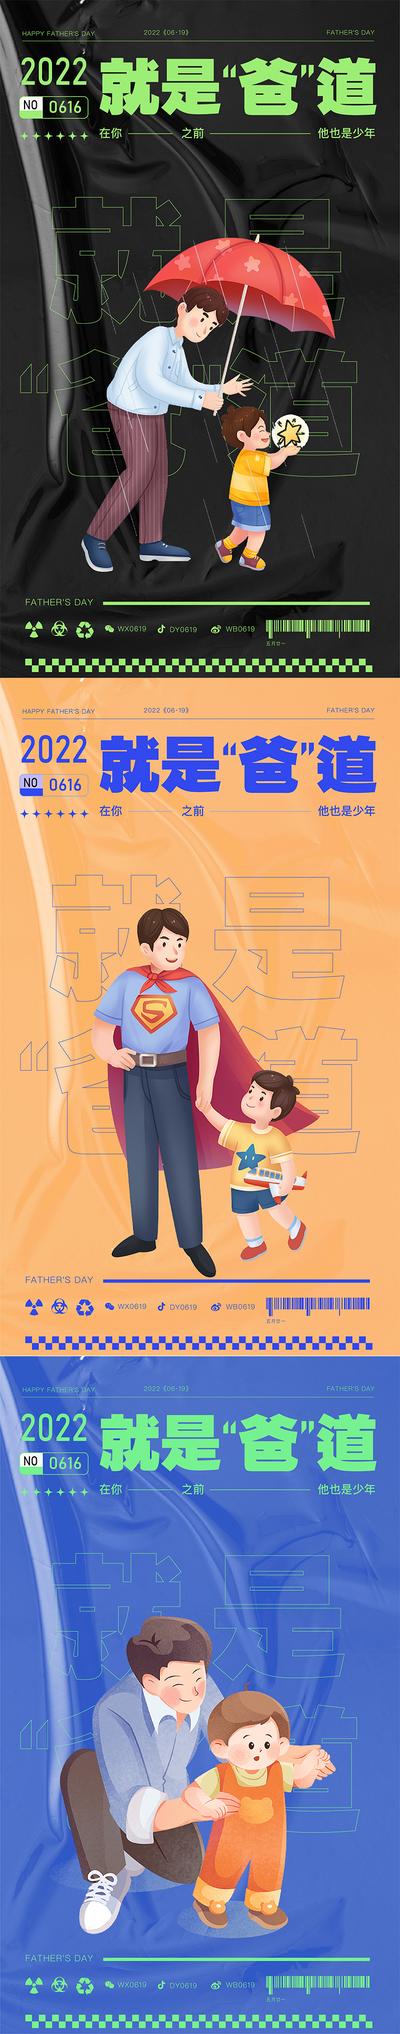 南门网 海报 公历节日 父亲节 亲子 超人 插画 父子 系列